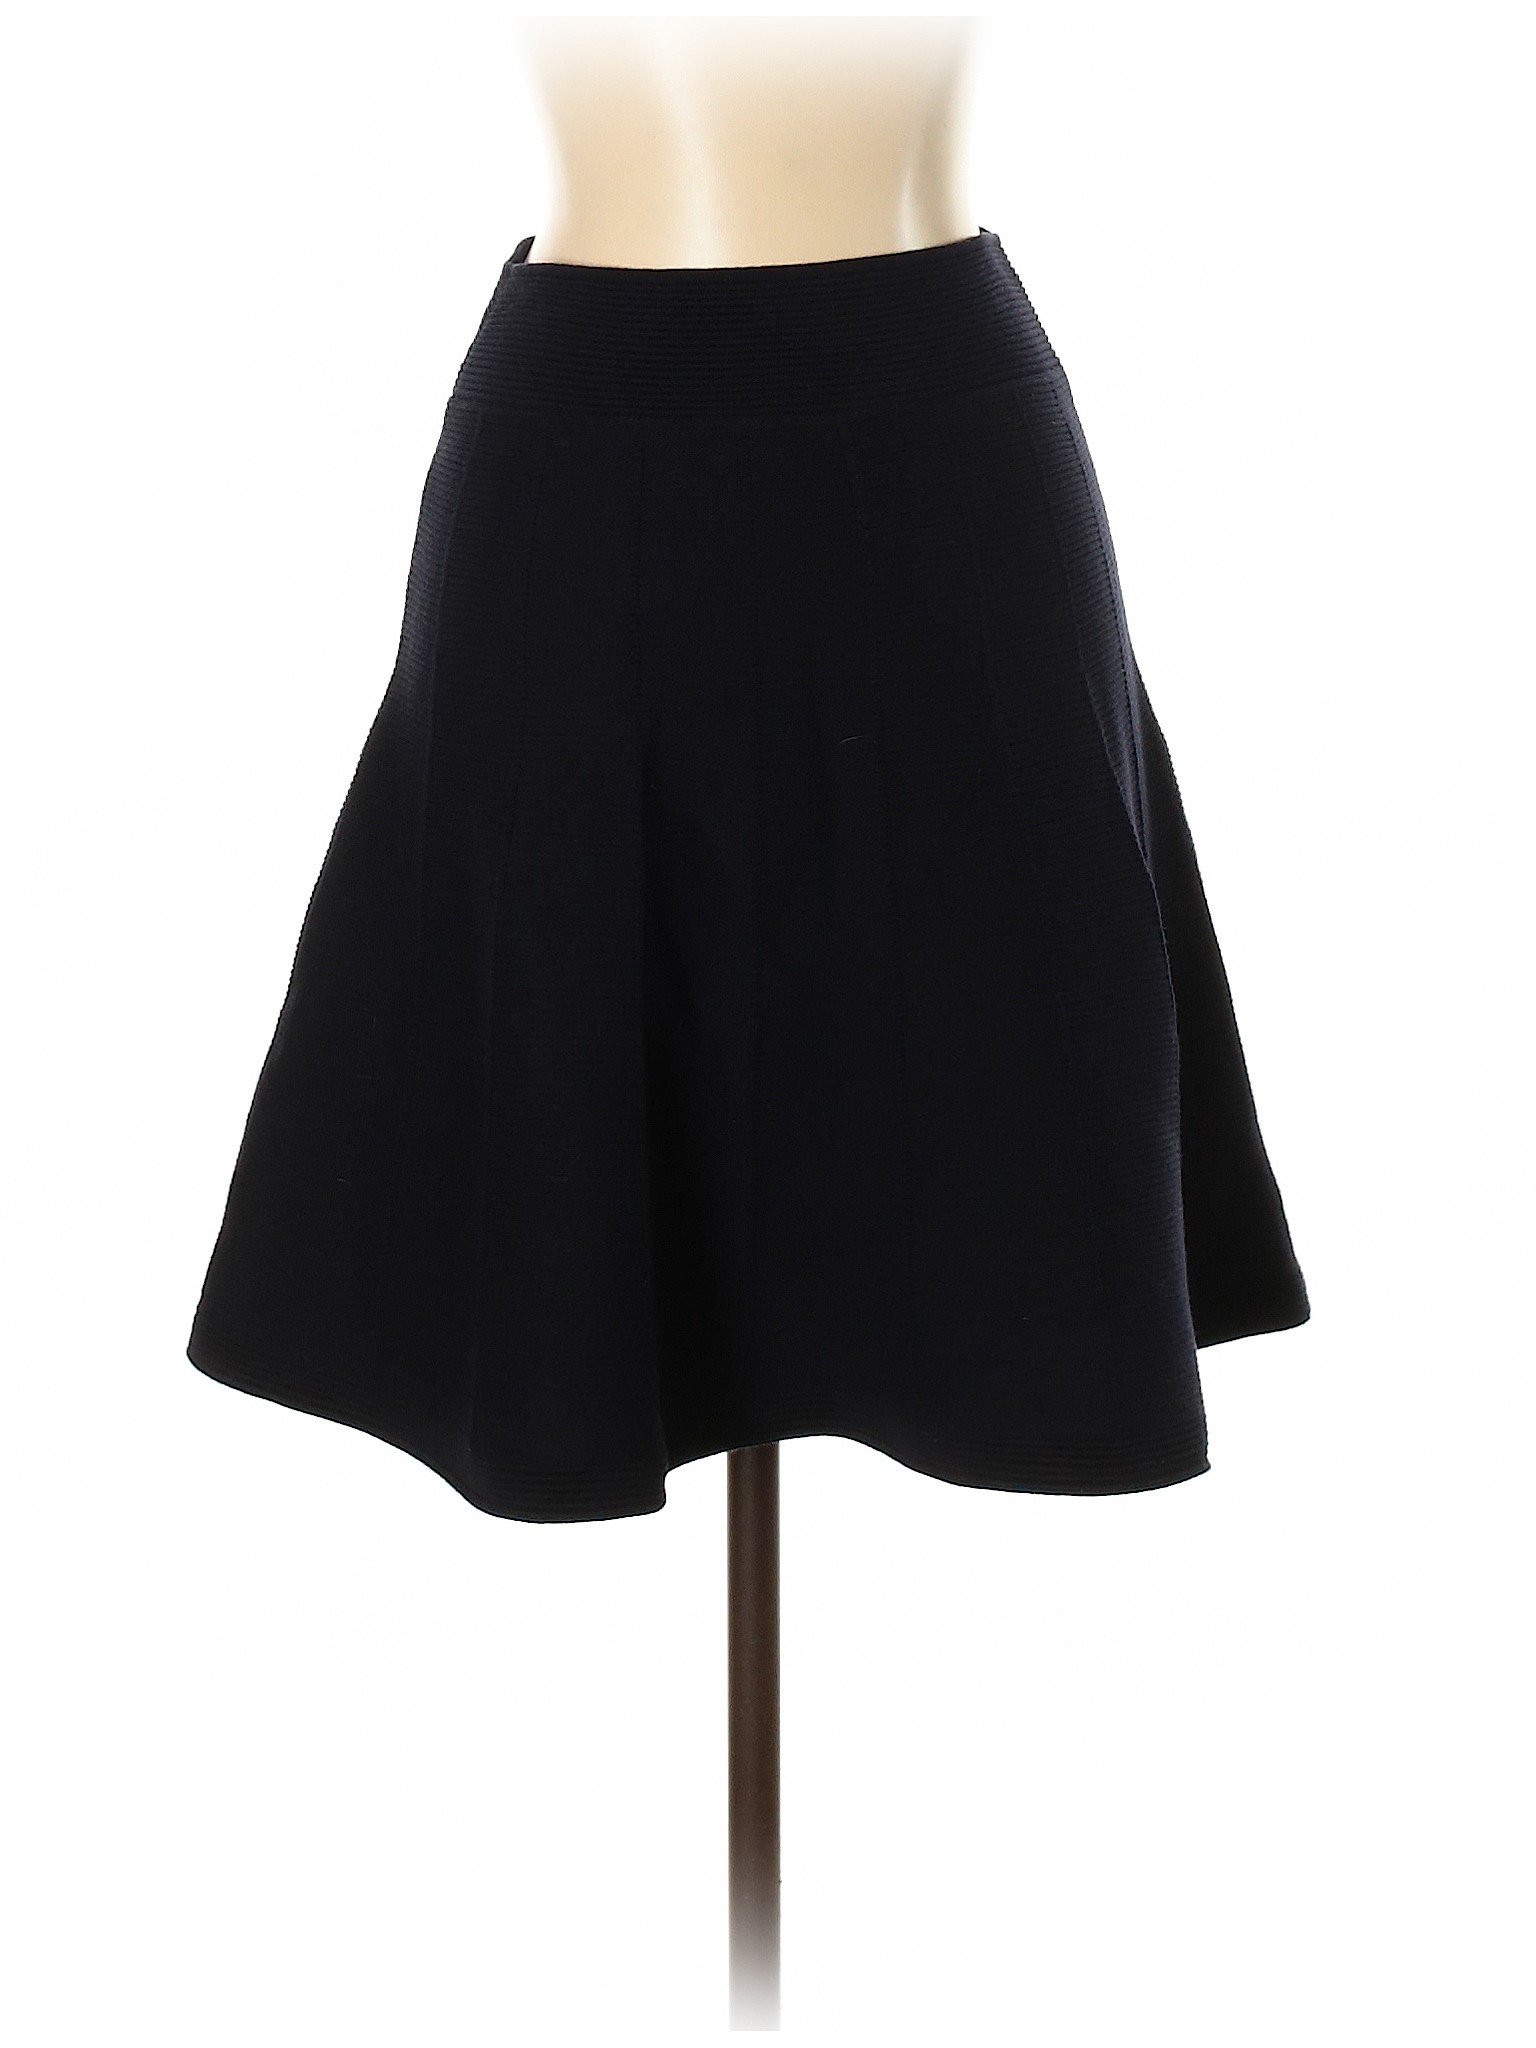 Sandro Women Blue Casual Skirt S | eBay